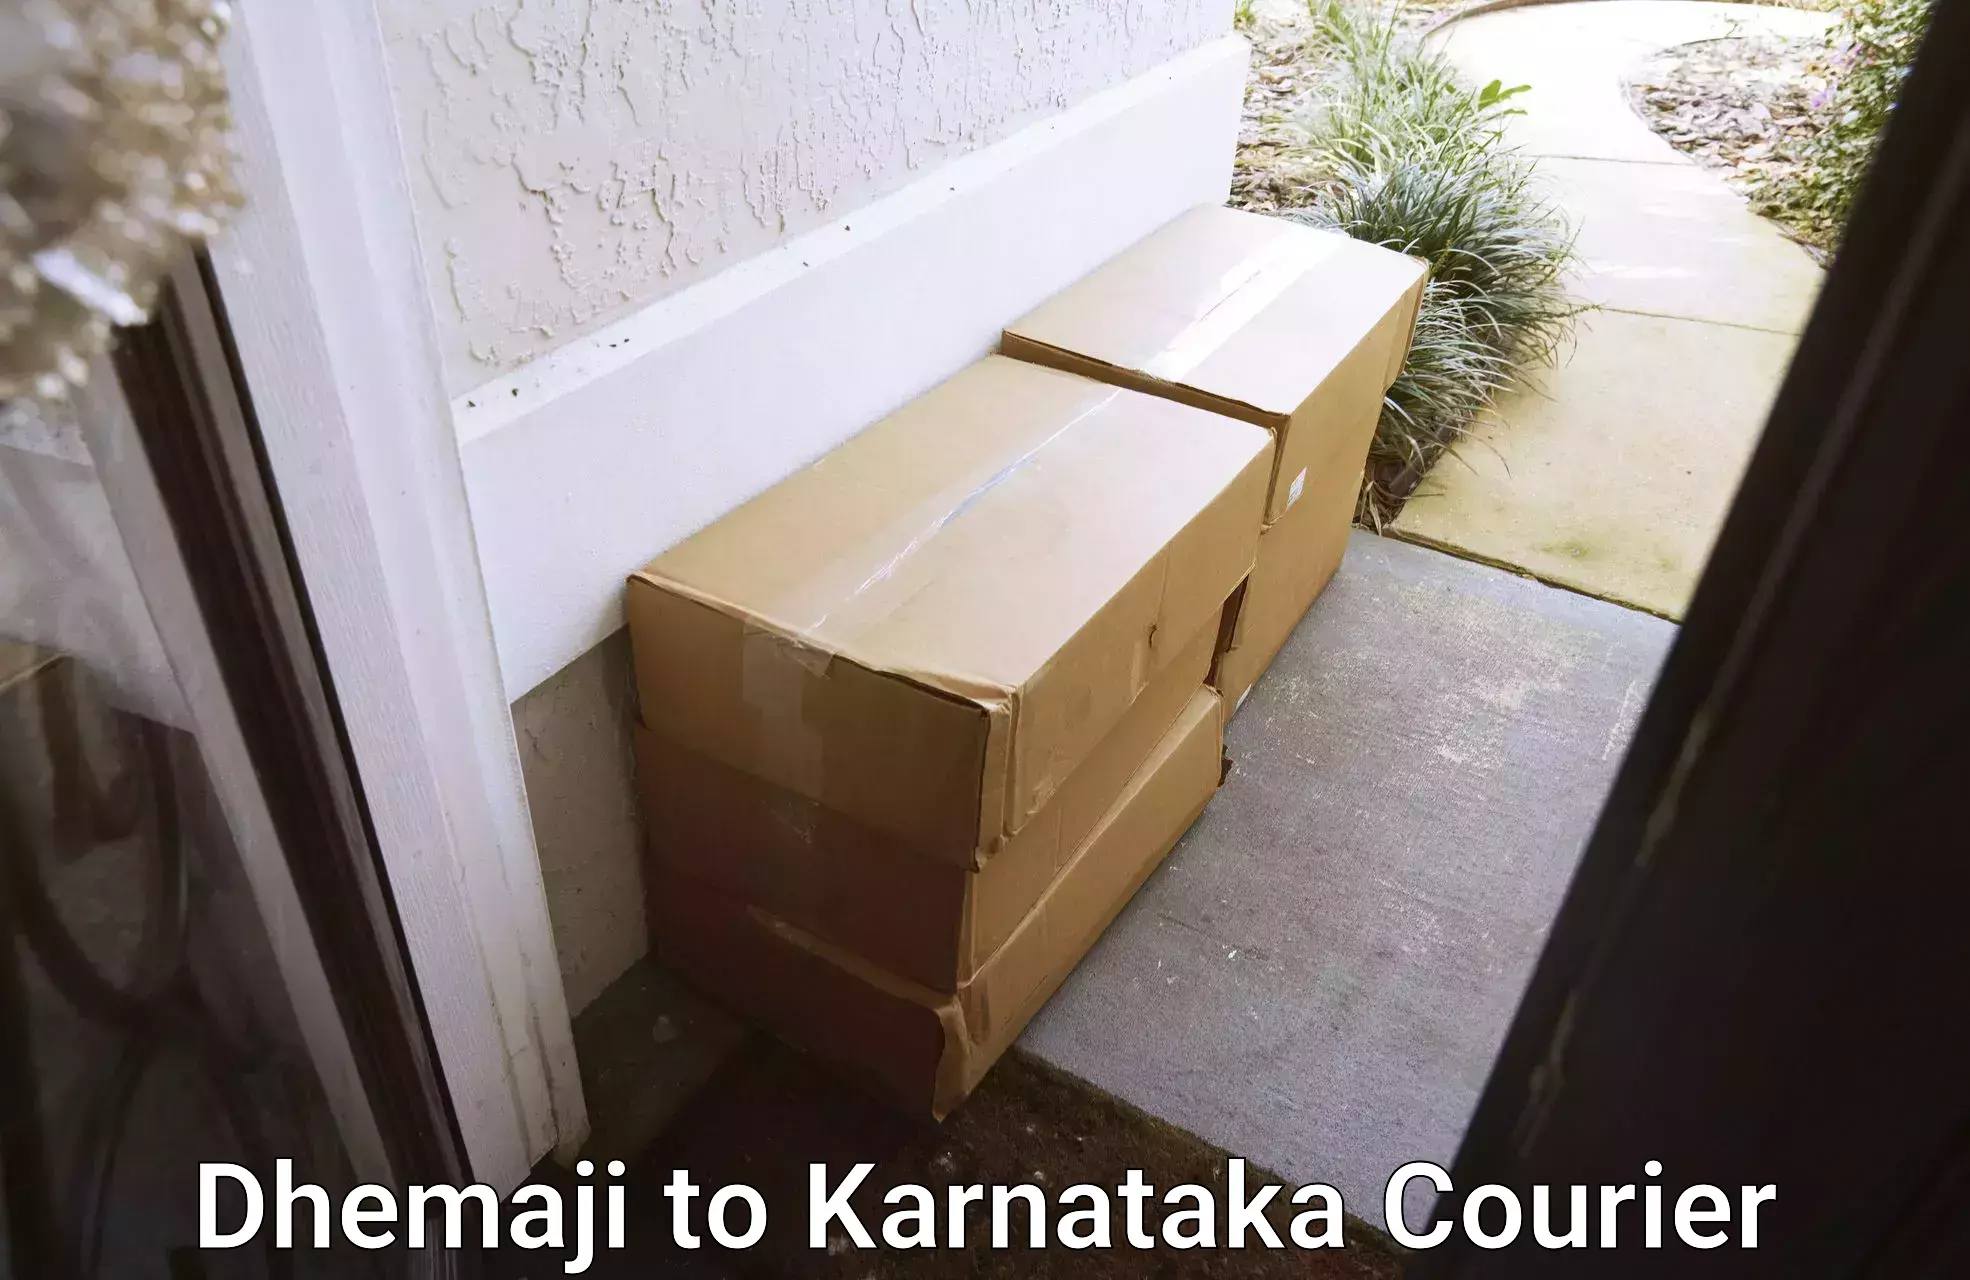 Urgent courier needs Dhemaji to Kurugodu